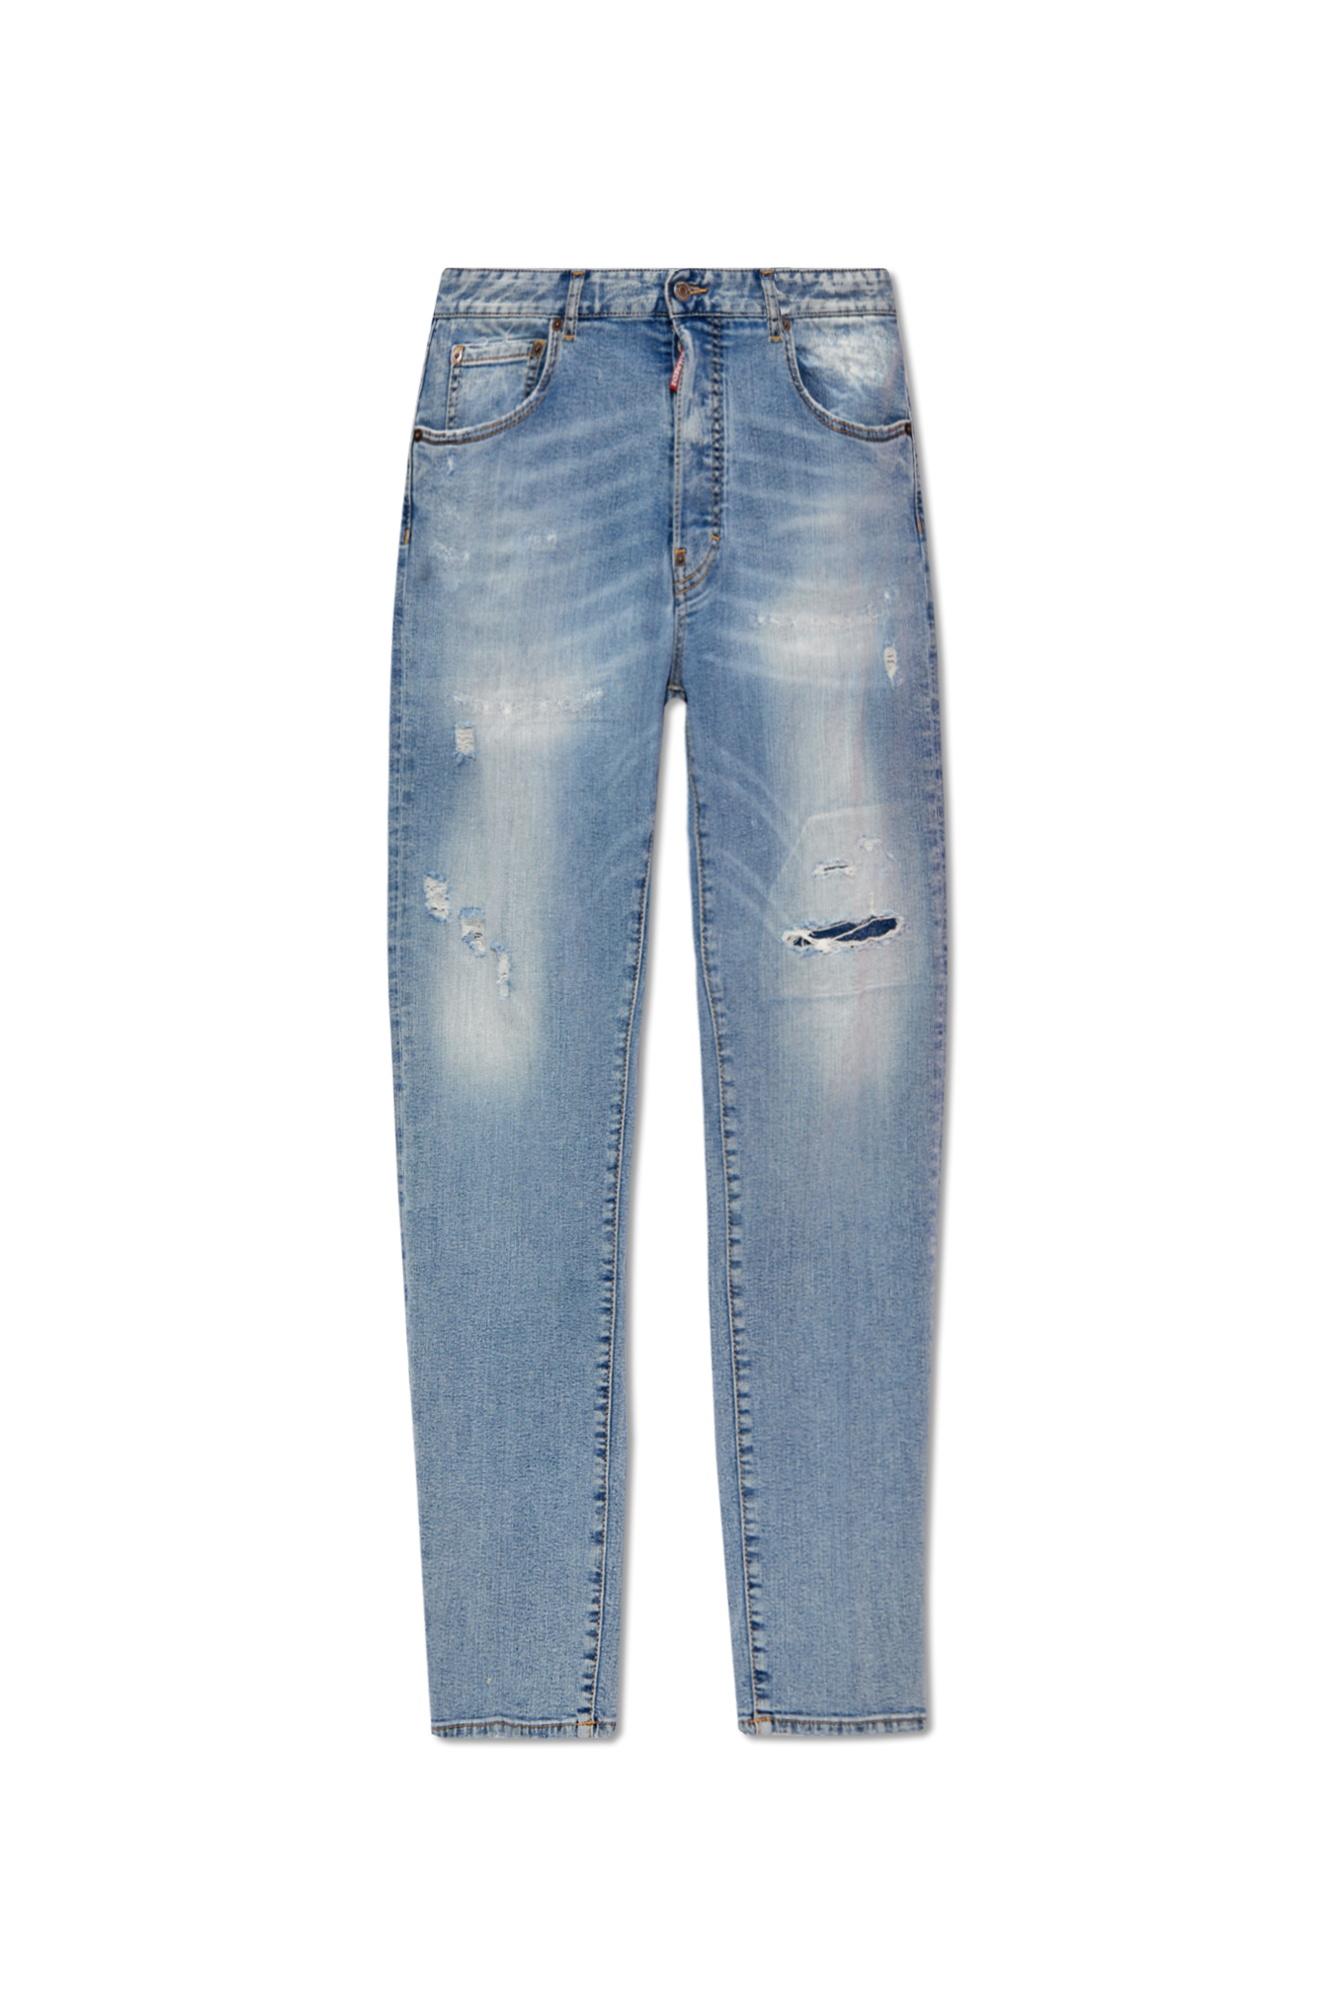 Mix Match Pants - GenesinlifeShops KR - Light blue '642' jeans